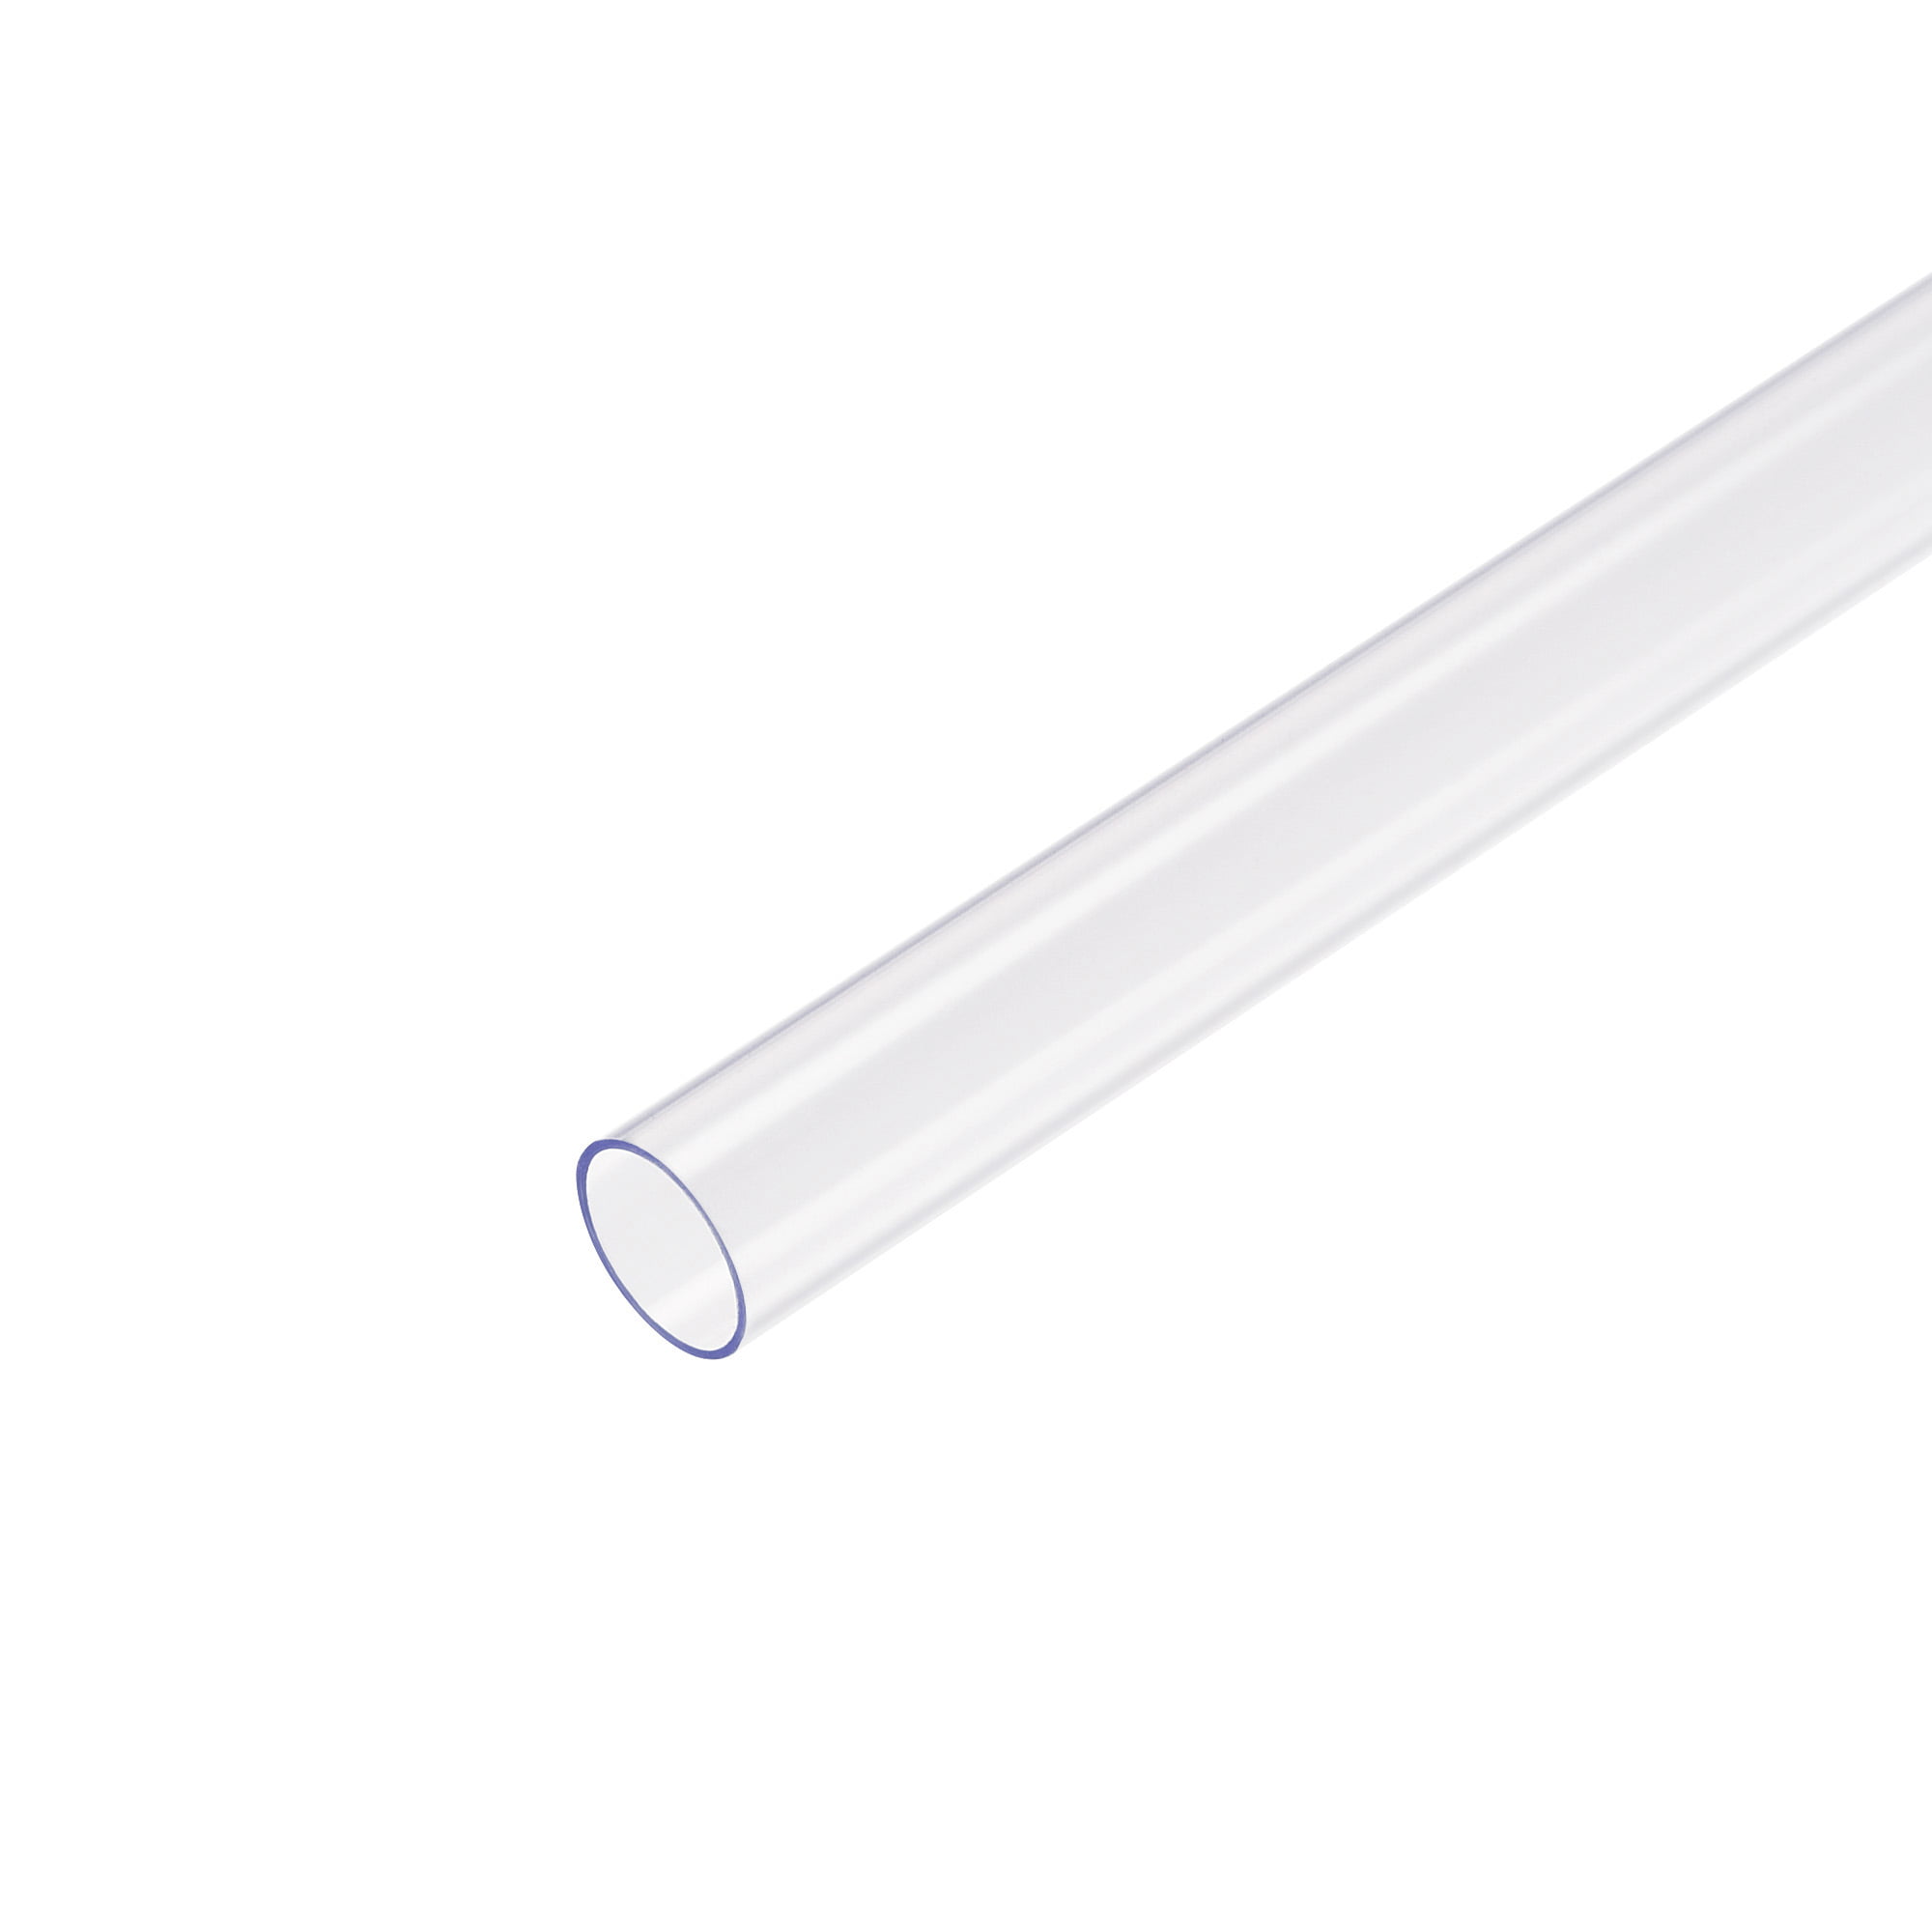 Tube Rigide Rond en Polycarbonate Transparent de 30 Mm (1,18 Pouce) Idx32  Mm (1,26 Pouce) Odx500 Mm (1,64 Ft) Longueur Tube en Plastique 